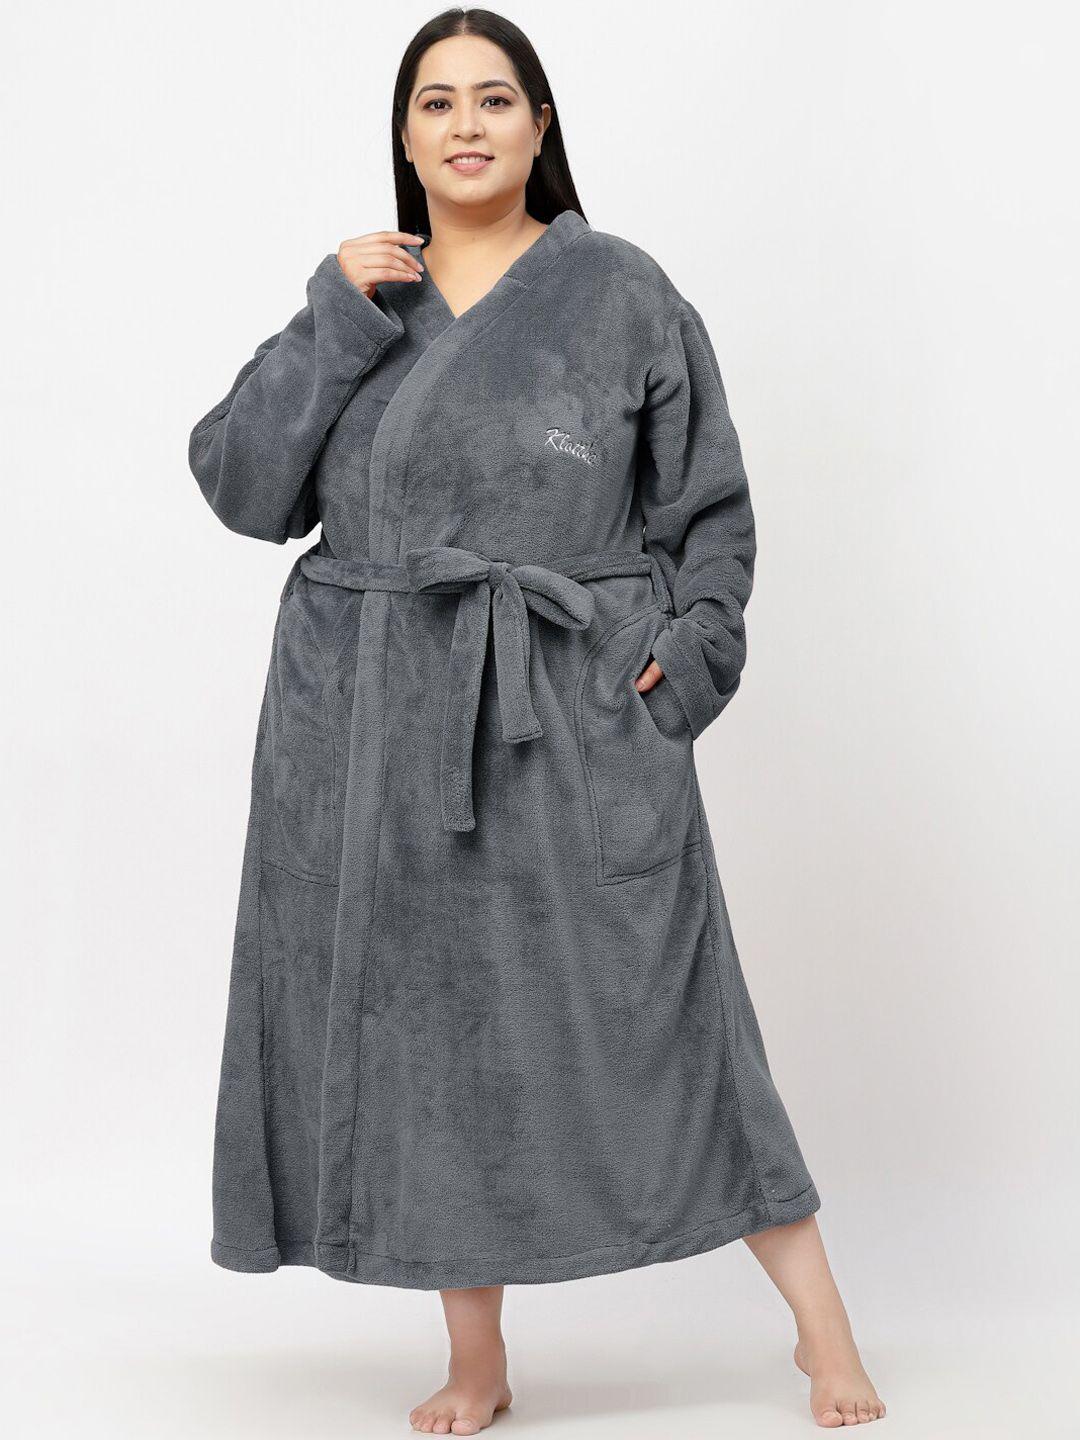 klotthe women plus size solid woolen bath robe with belt